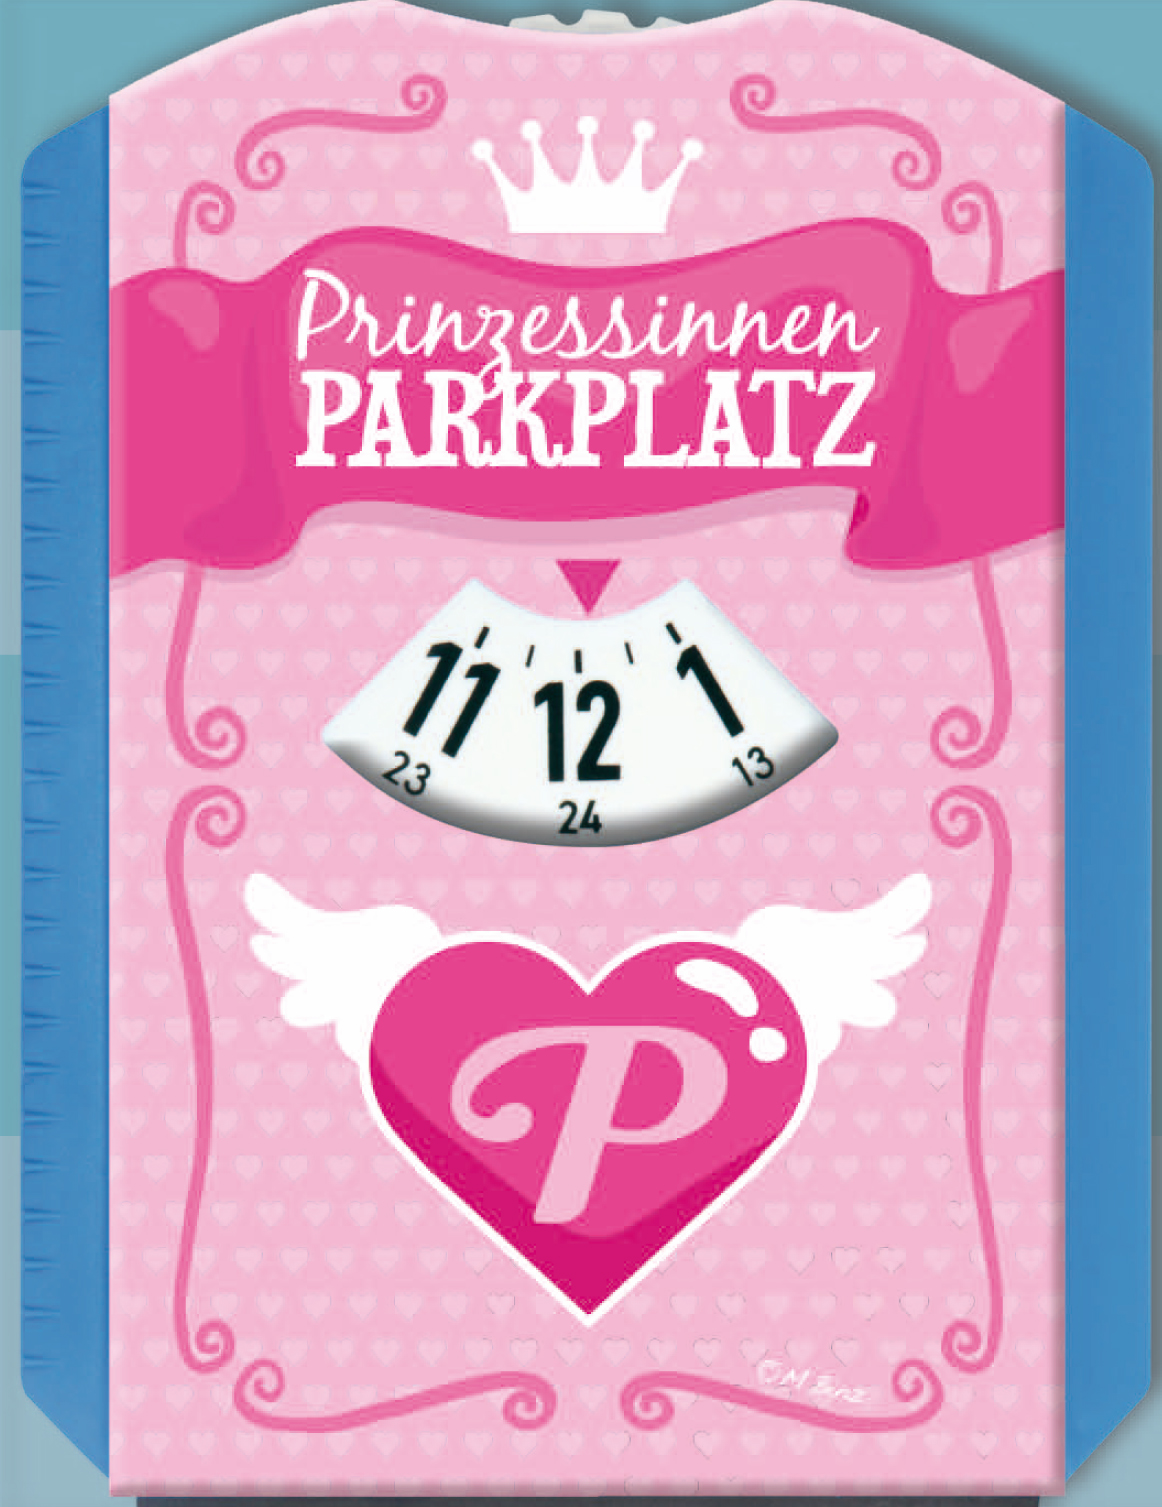 https://www.pigmento.de/media/image/7e/0d/0d/eigenart-parkscheibe-eiskratzer-spassscheibe-prinzessinnen-parkplatz-pink-solo-vorne.jpg